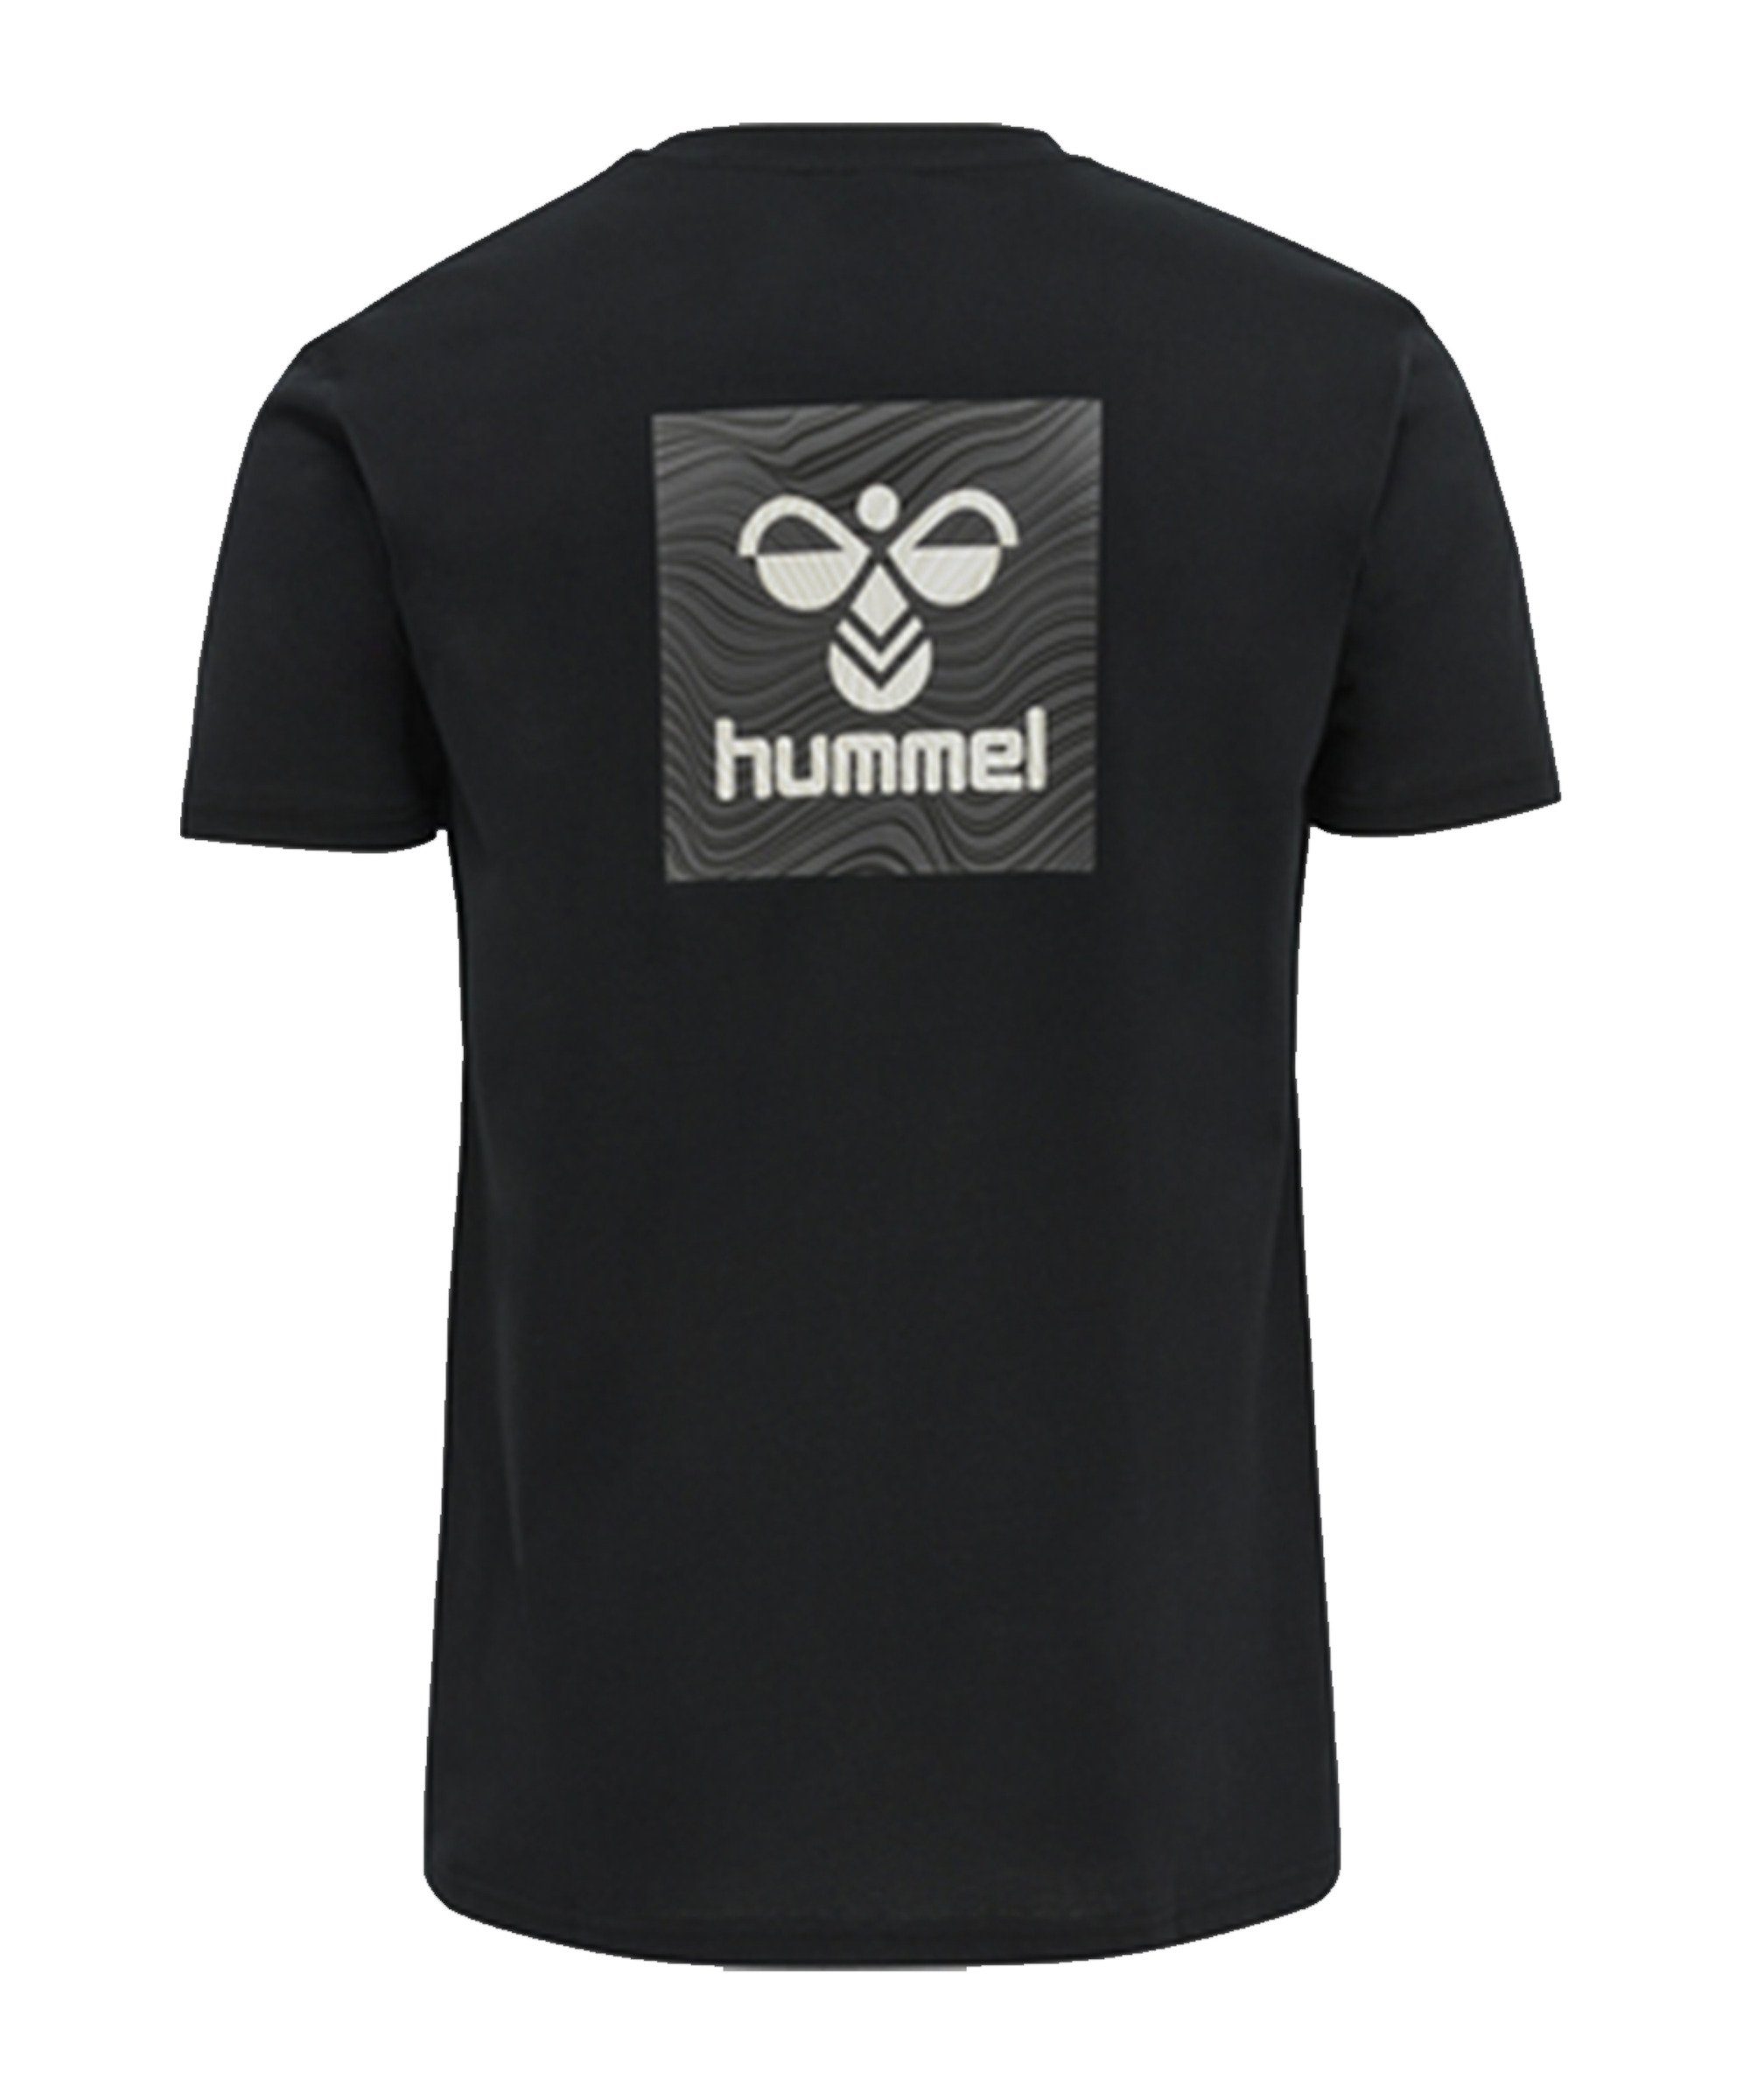 hummel T-Shirt hmlOFFGRID schwarzgrau default T-Shirt